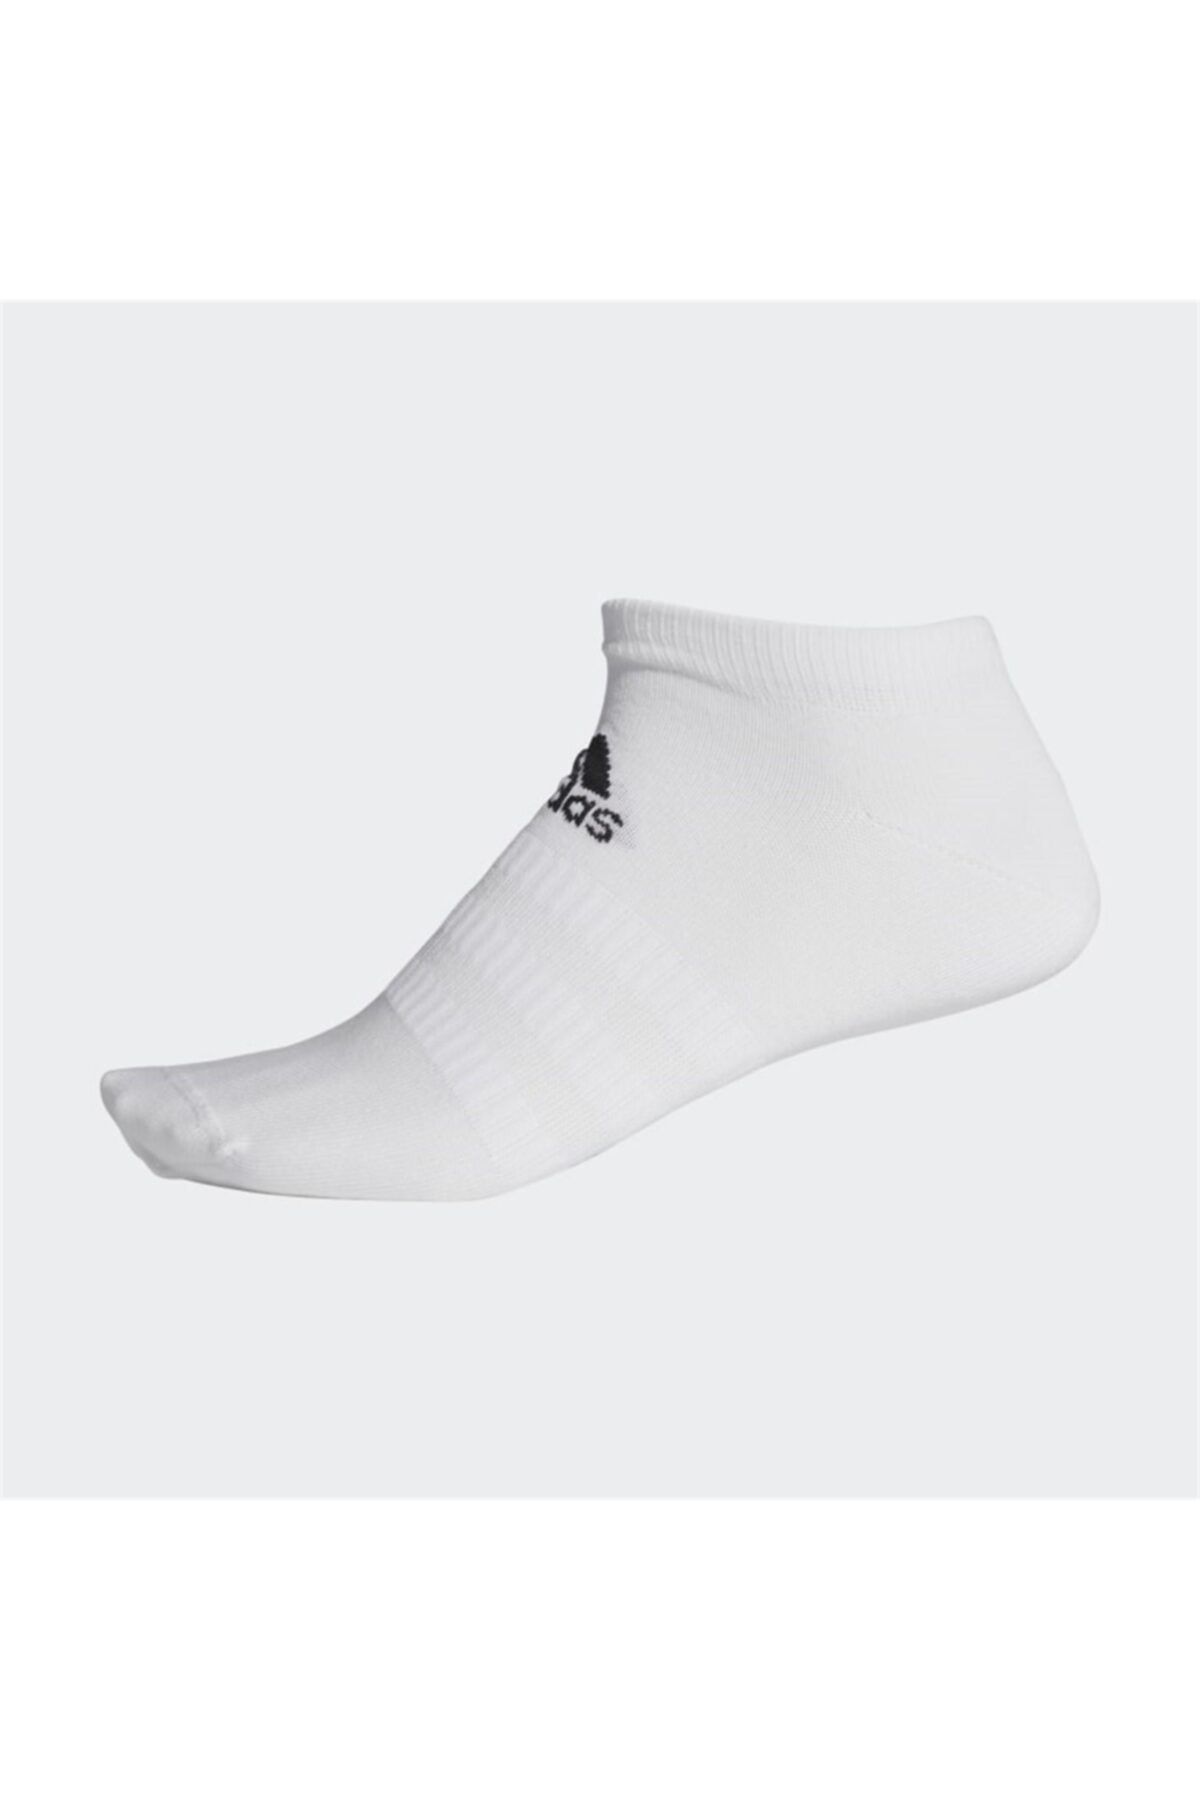 adidas Dz9422 Beyaz Tekli Bilek Çorap